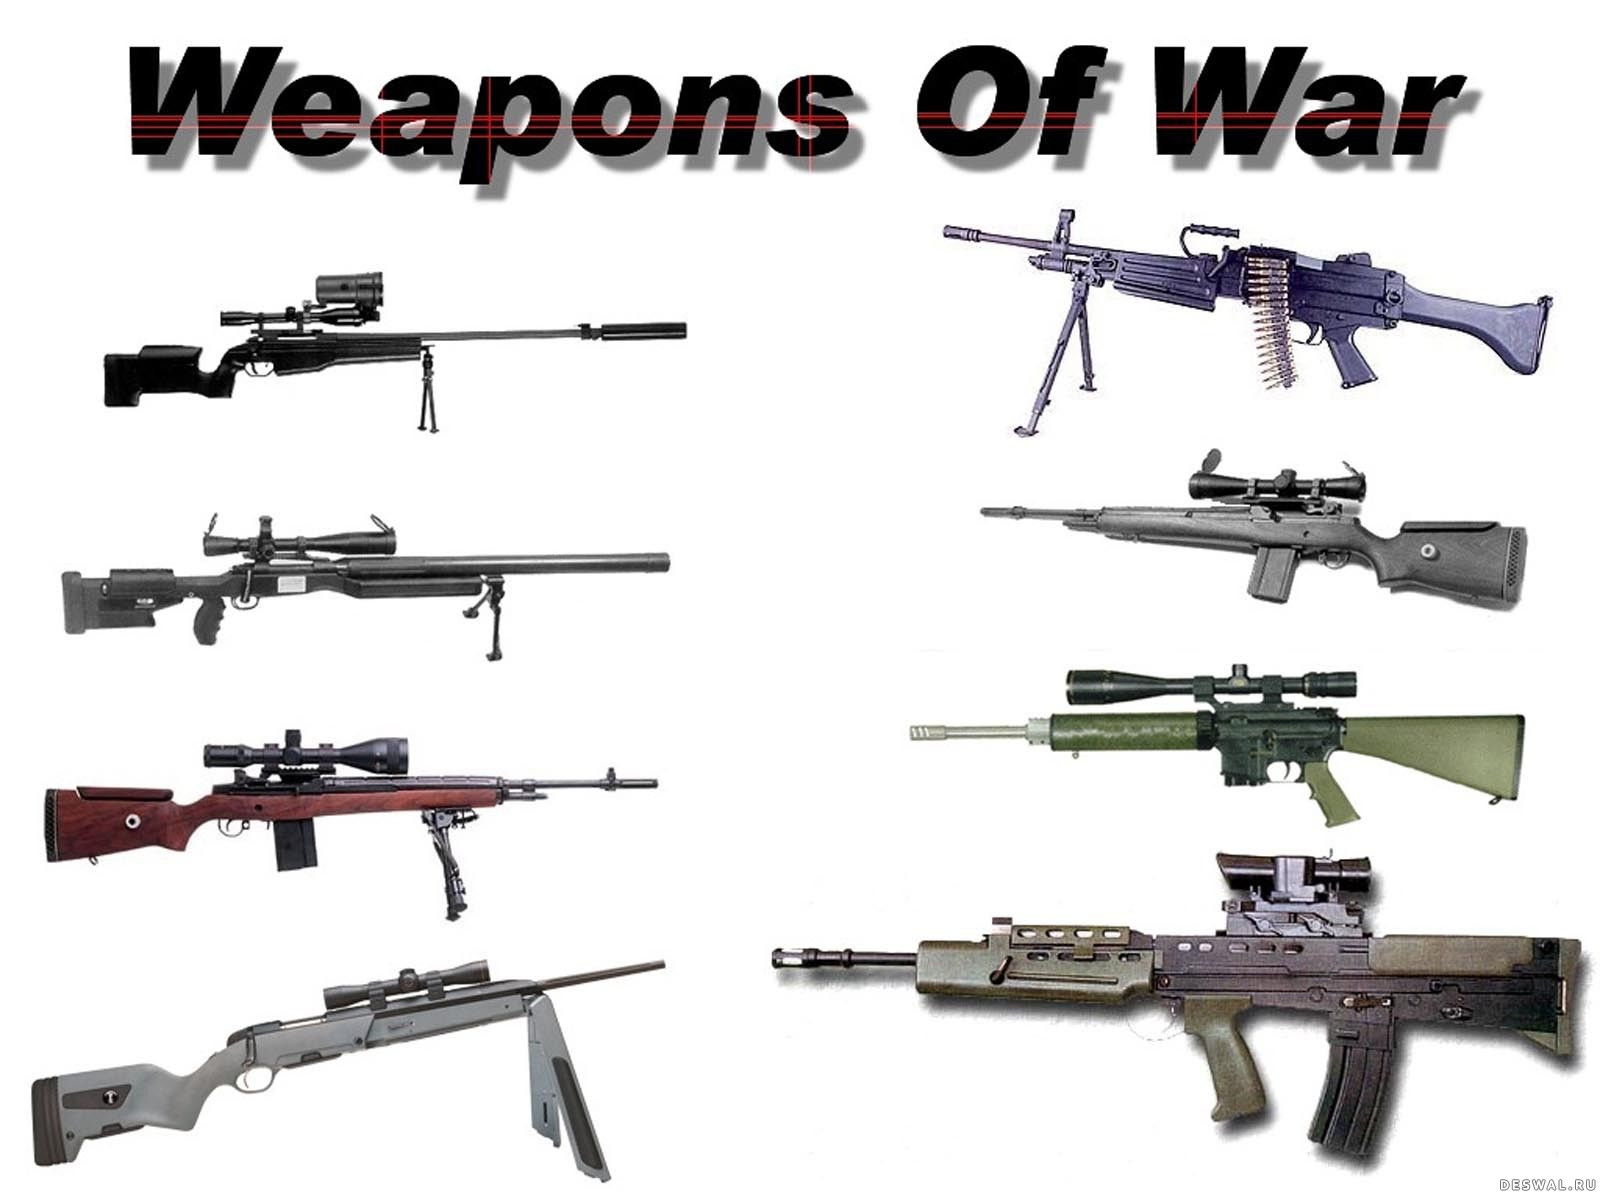 все виды оружия мира фото и названия